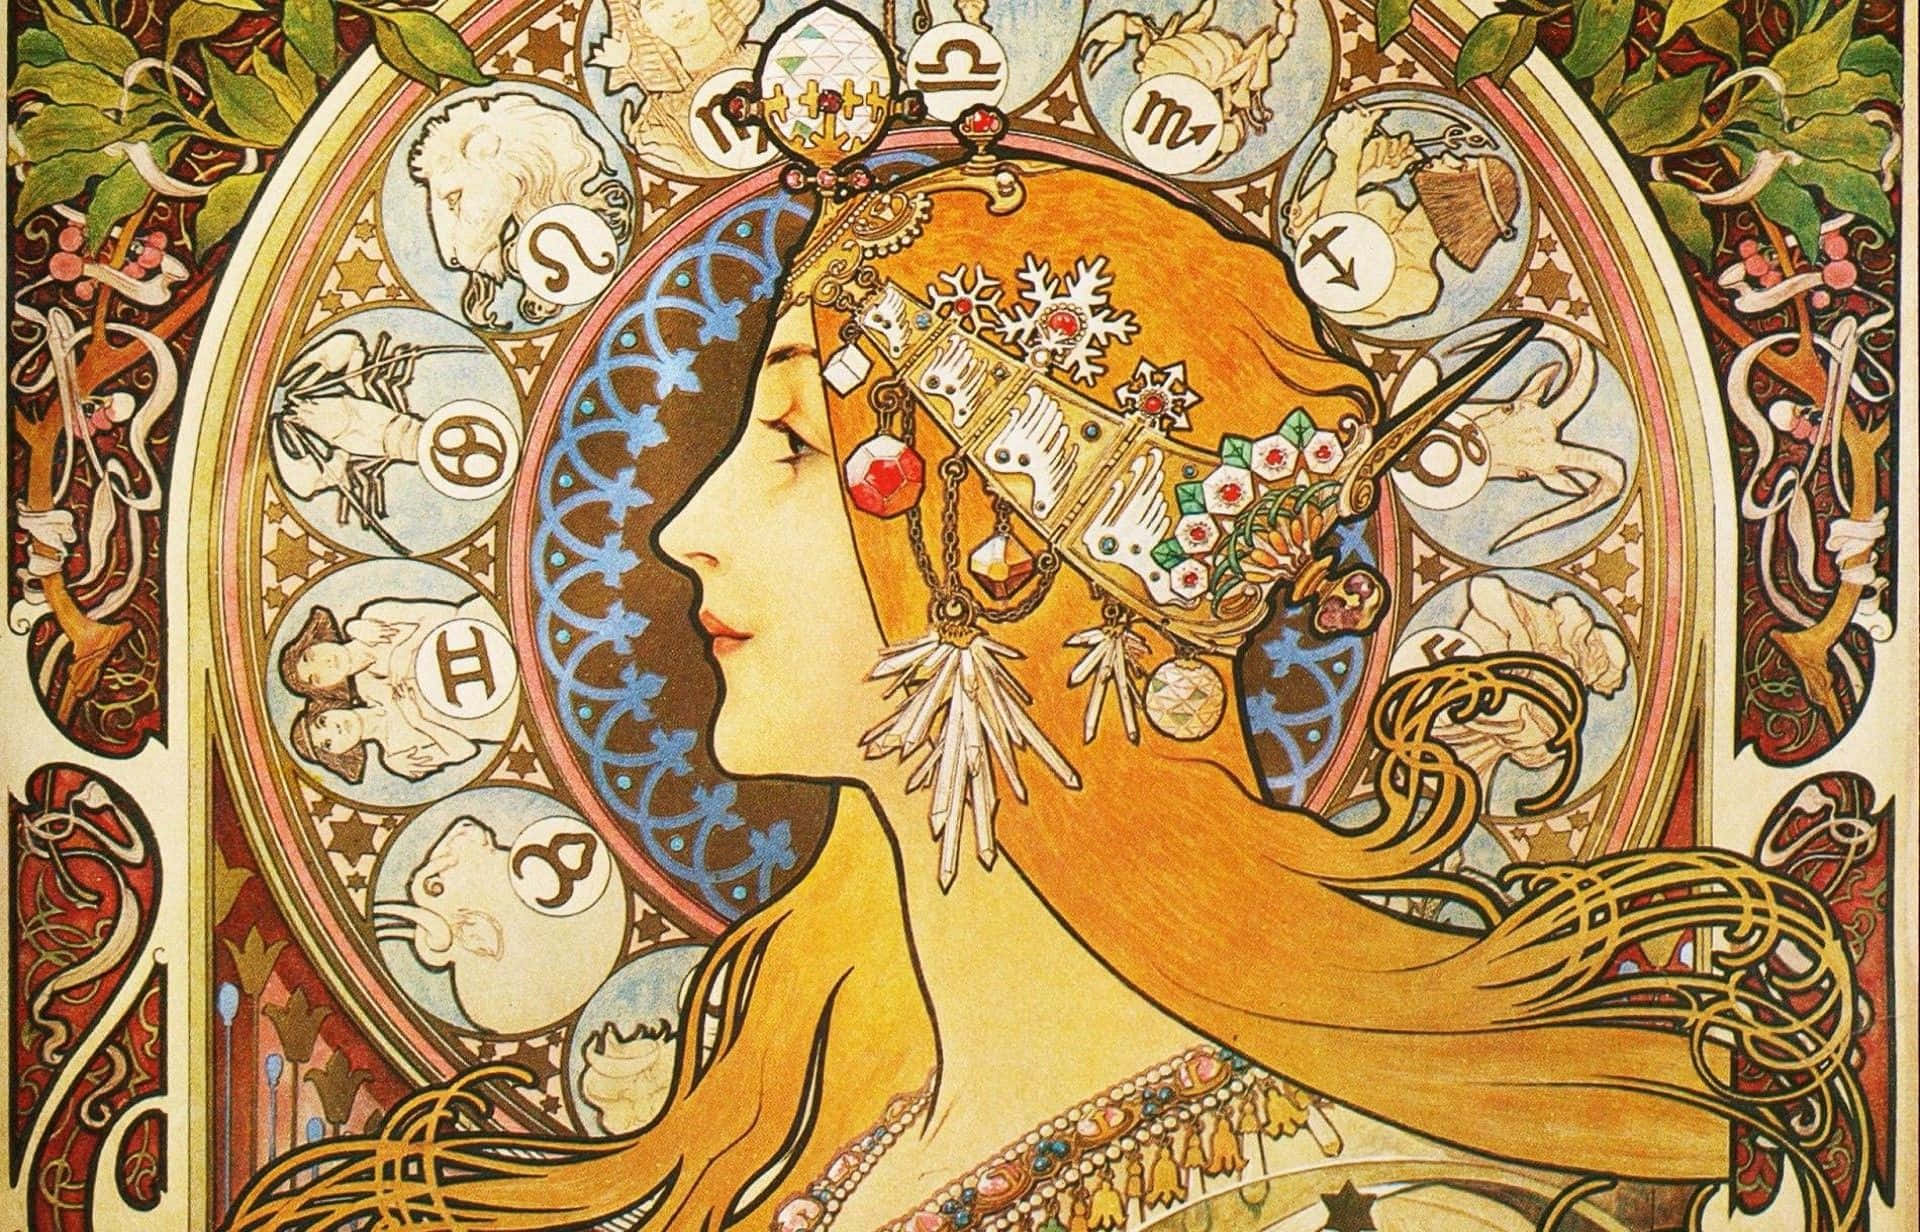 An Ornate Art Nouveau Construction Wallpaper